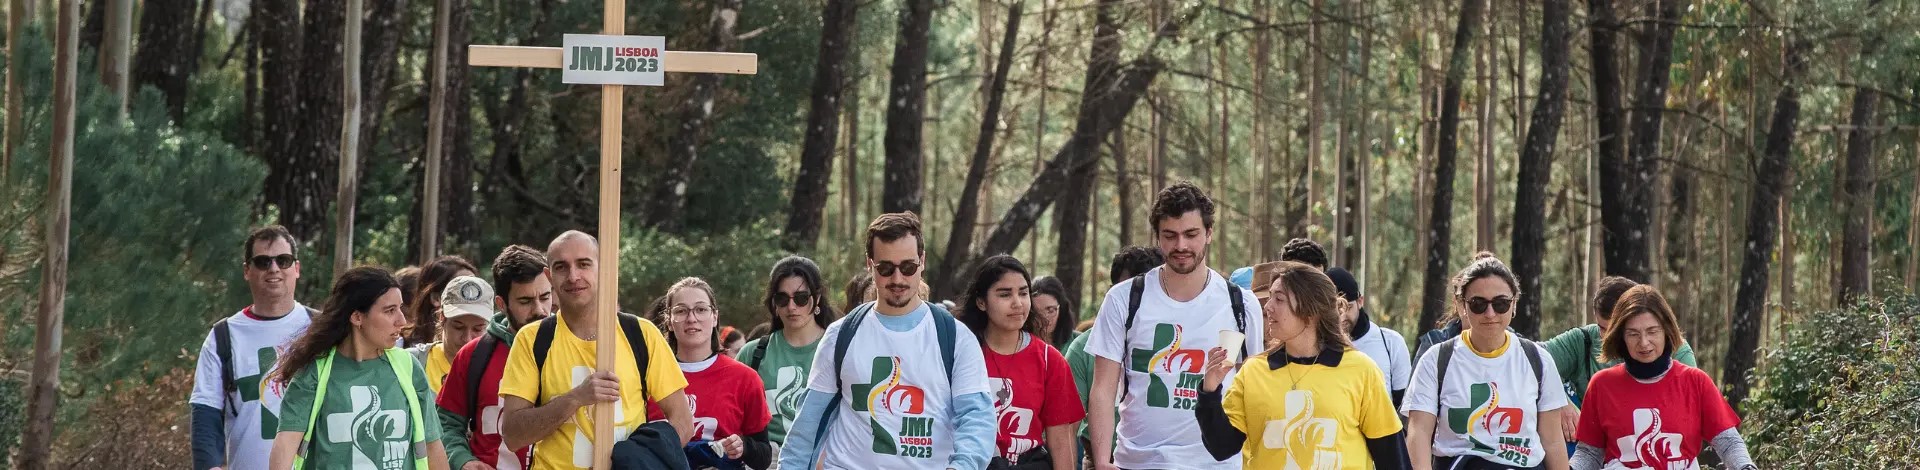 San Marino. Giornata Mondiale della Gioventù: giovani sammarinesi e feretrani in partenza per Lisbona